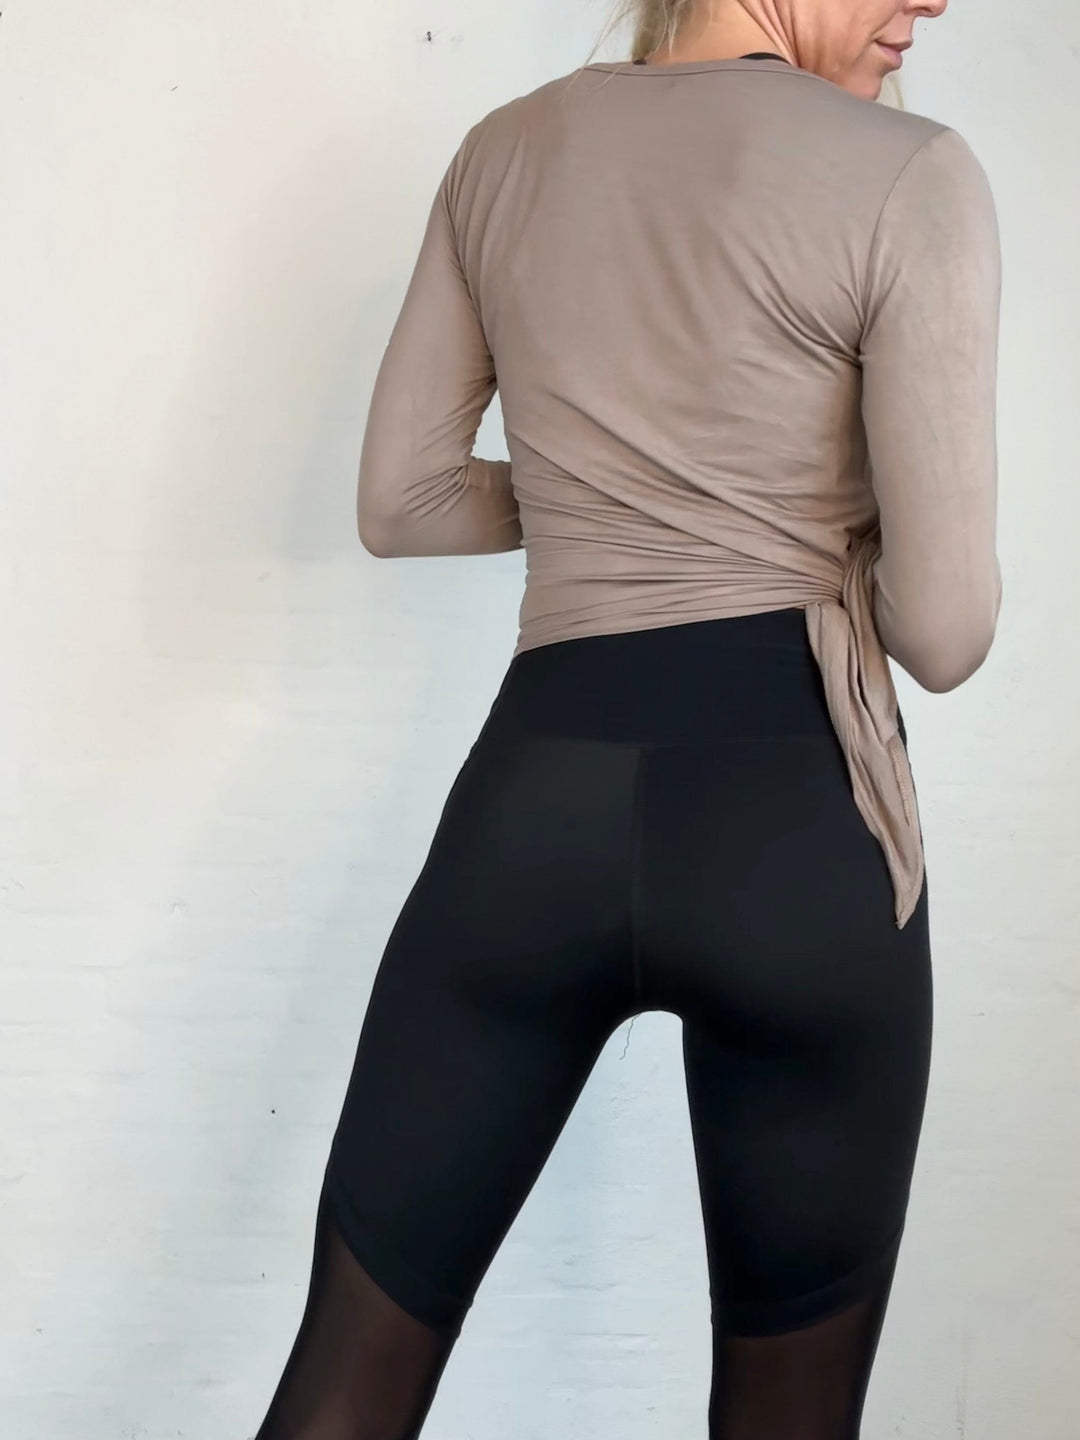 Sassy Copenhagen fitness Sassy Copenhagen - Enya Sort leggings med mesh - Fitness shape wear